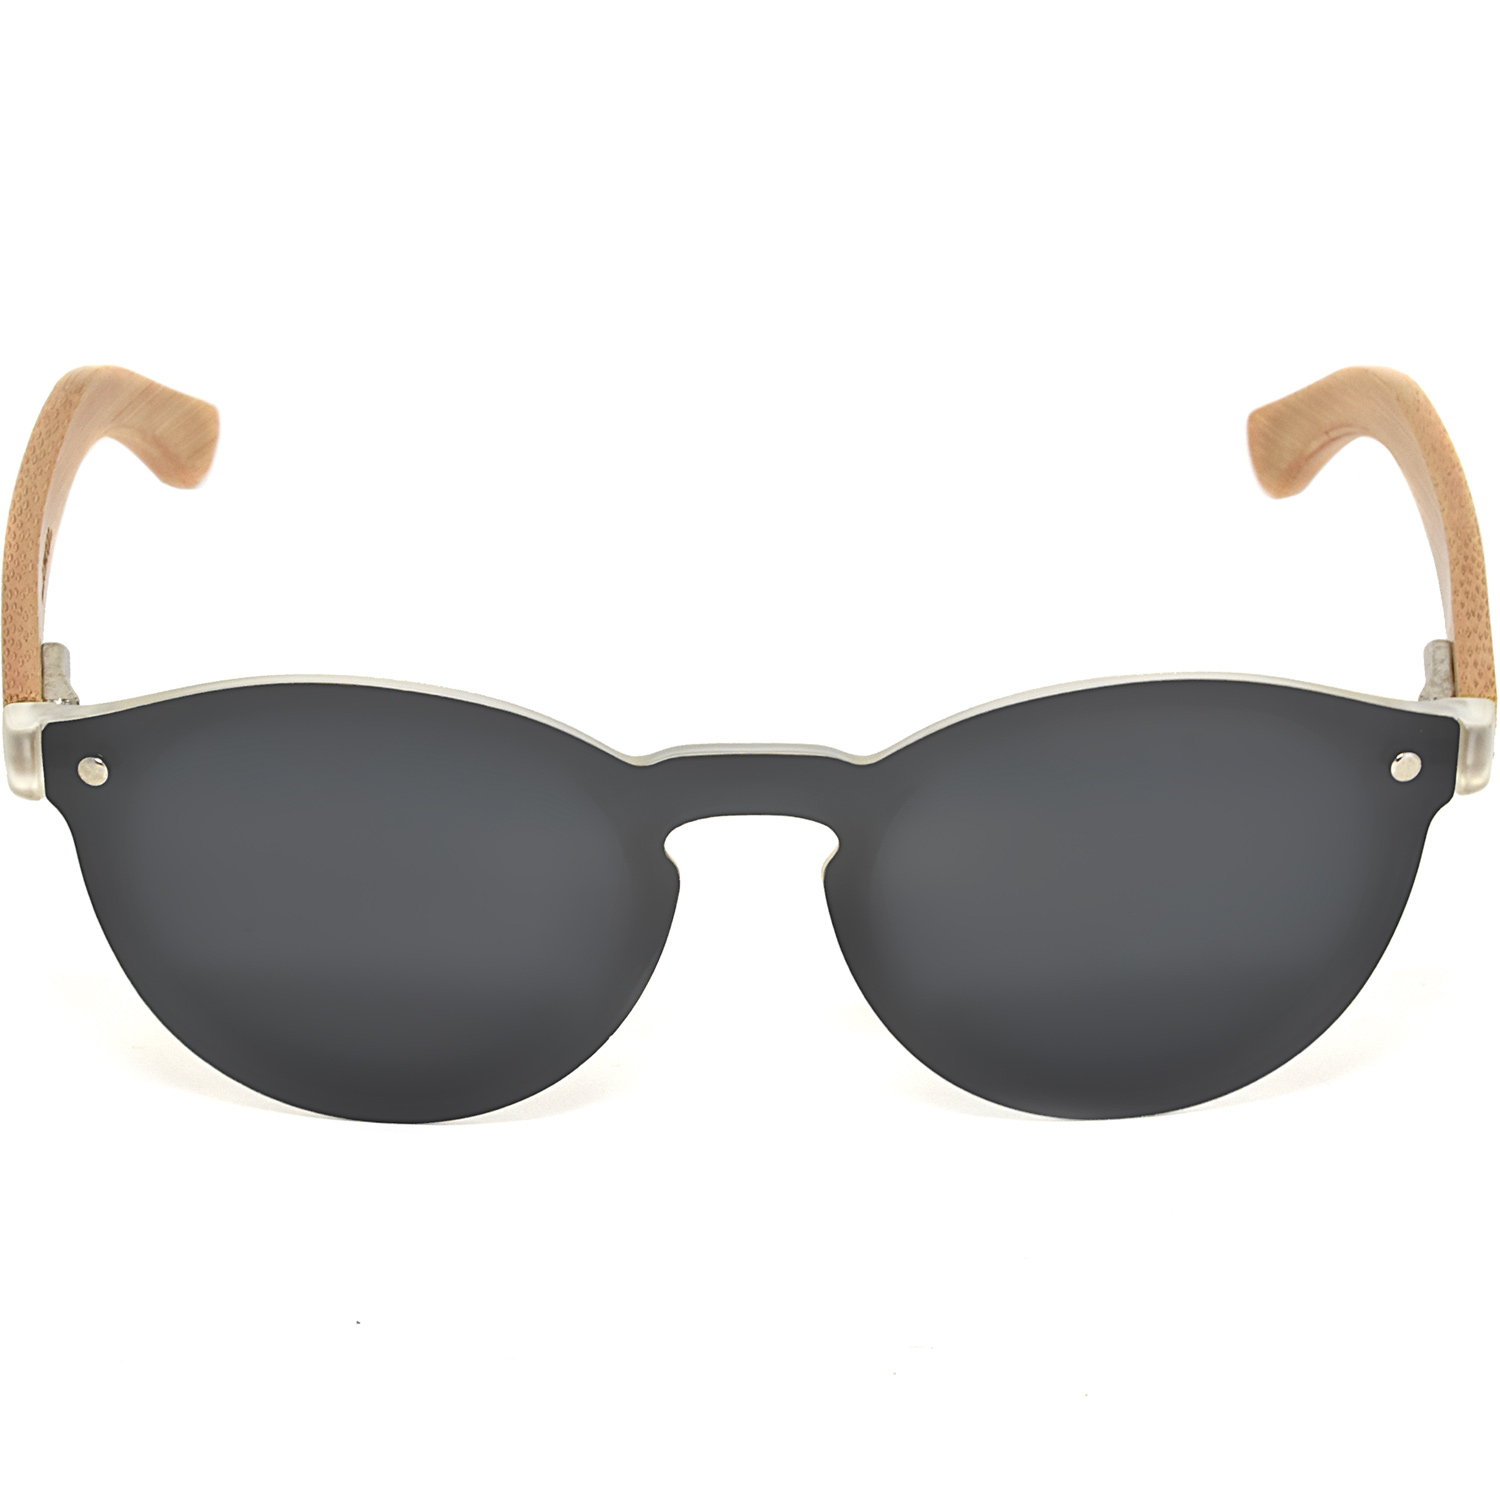 Round bamboo wood sunglasses black polarized lenses front